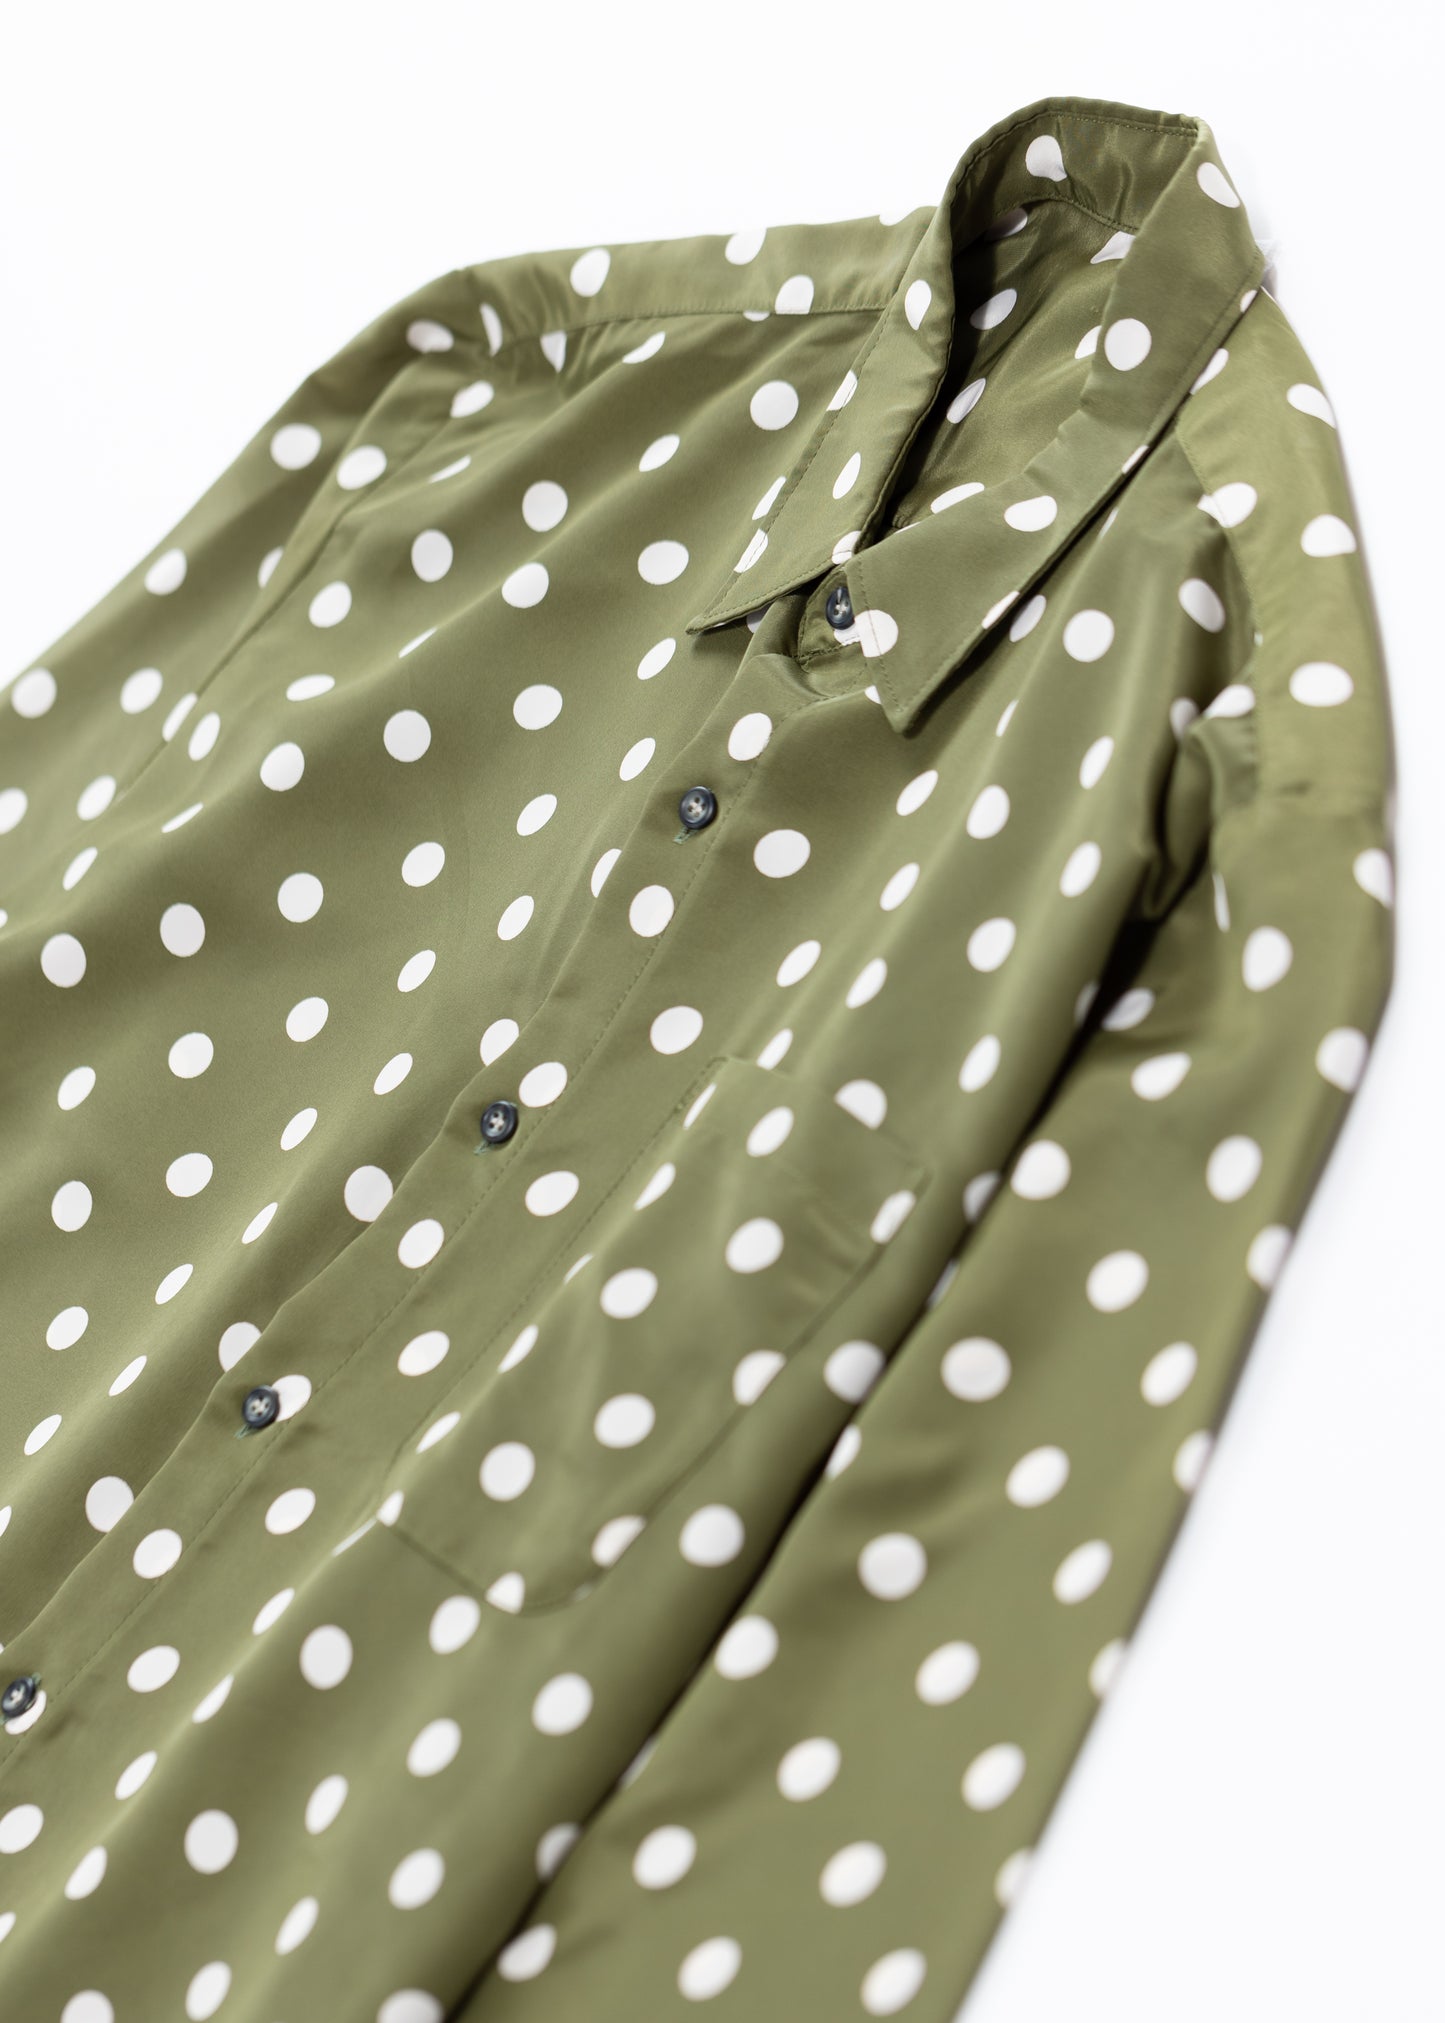 Polka dots printed shirt